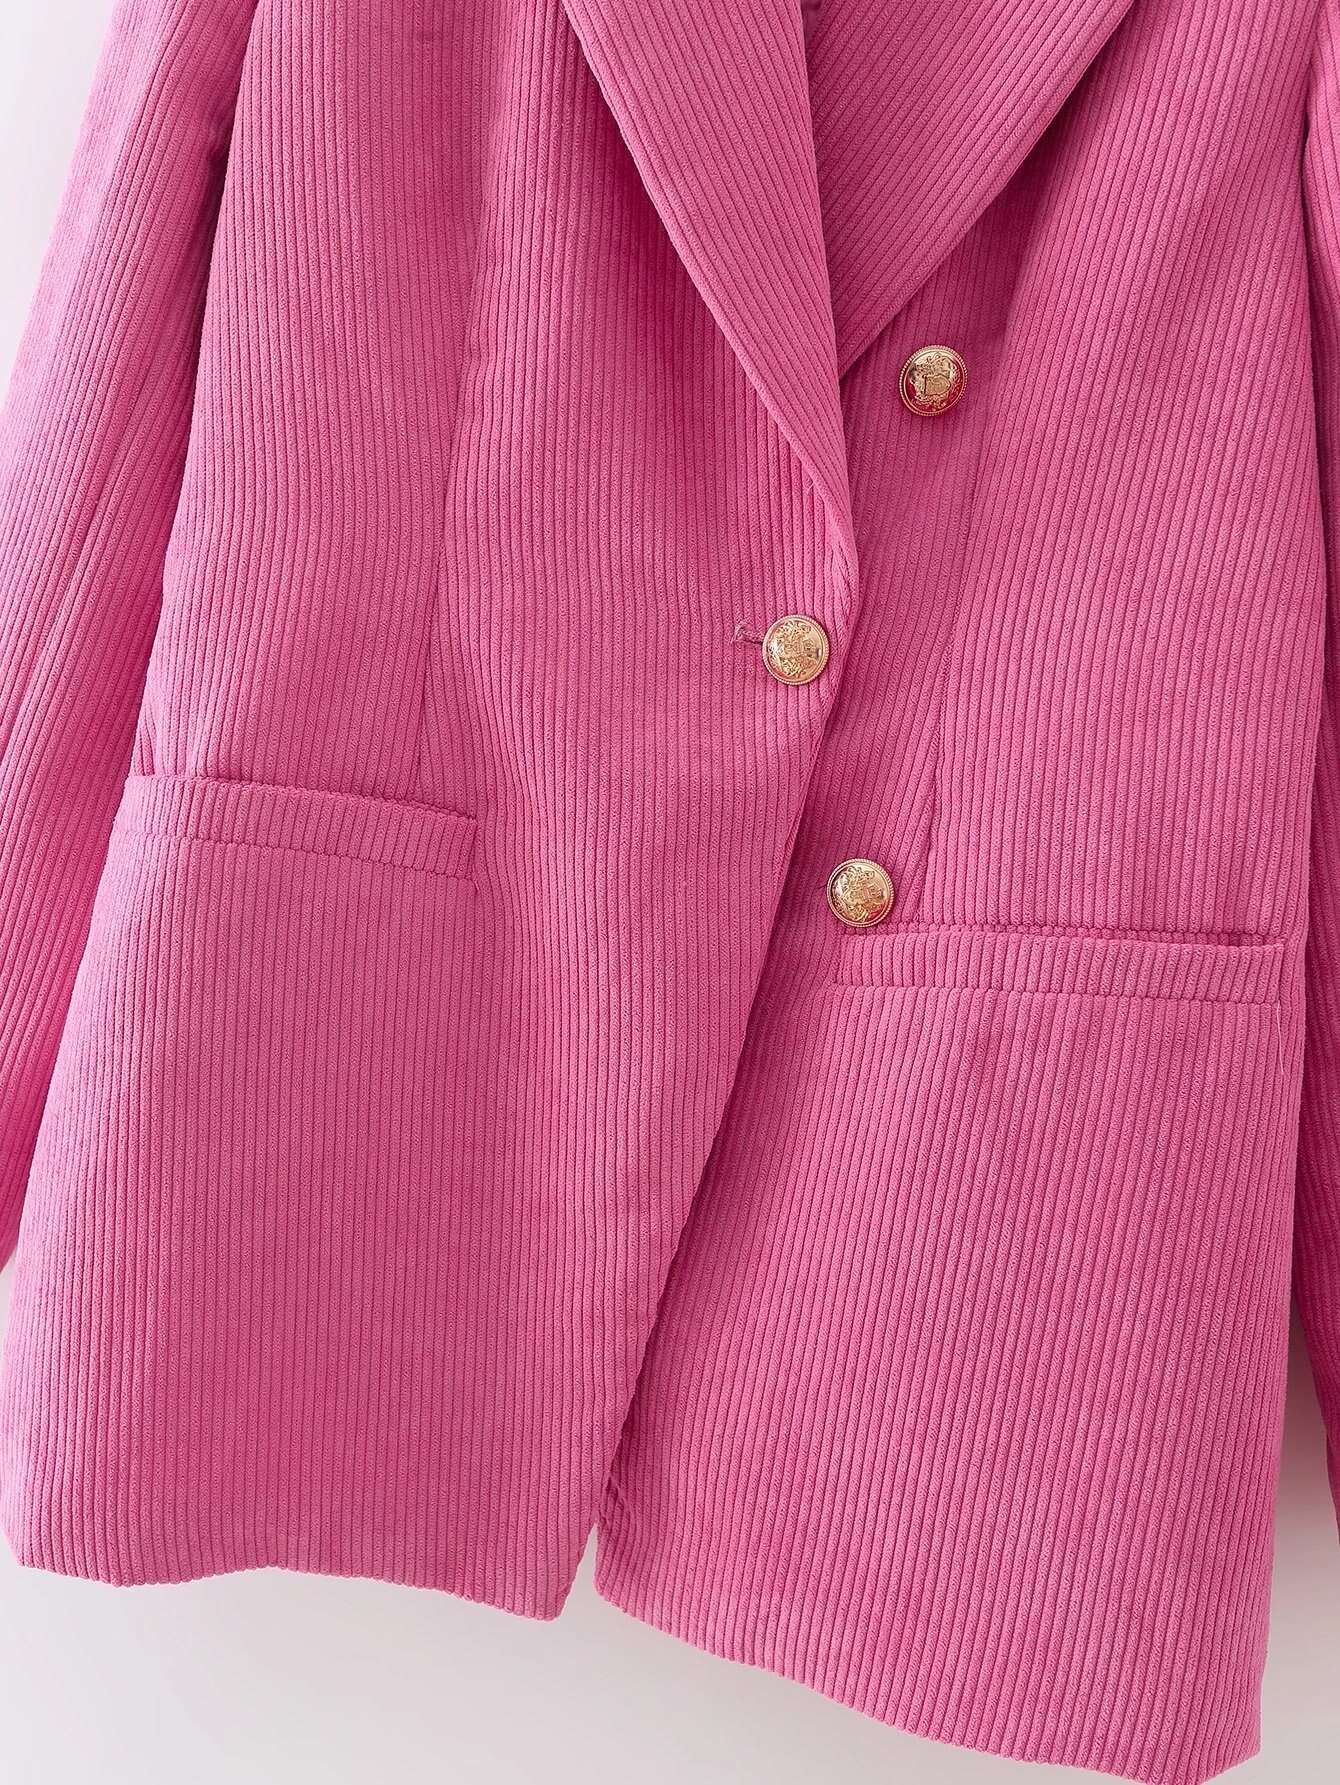 Blazer-en-velours-c-tel-pour-femmes-manteau-Vintage-manches-longues-avec-boutons-simples-poches-passepoil